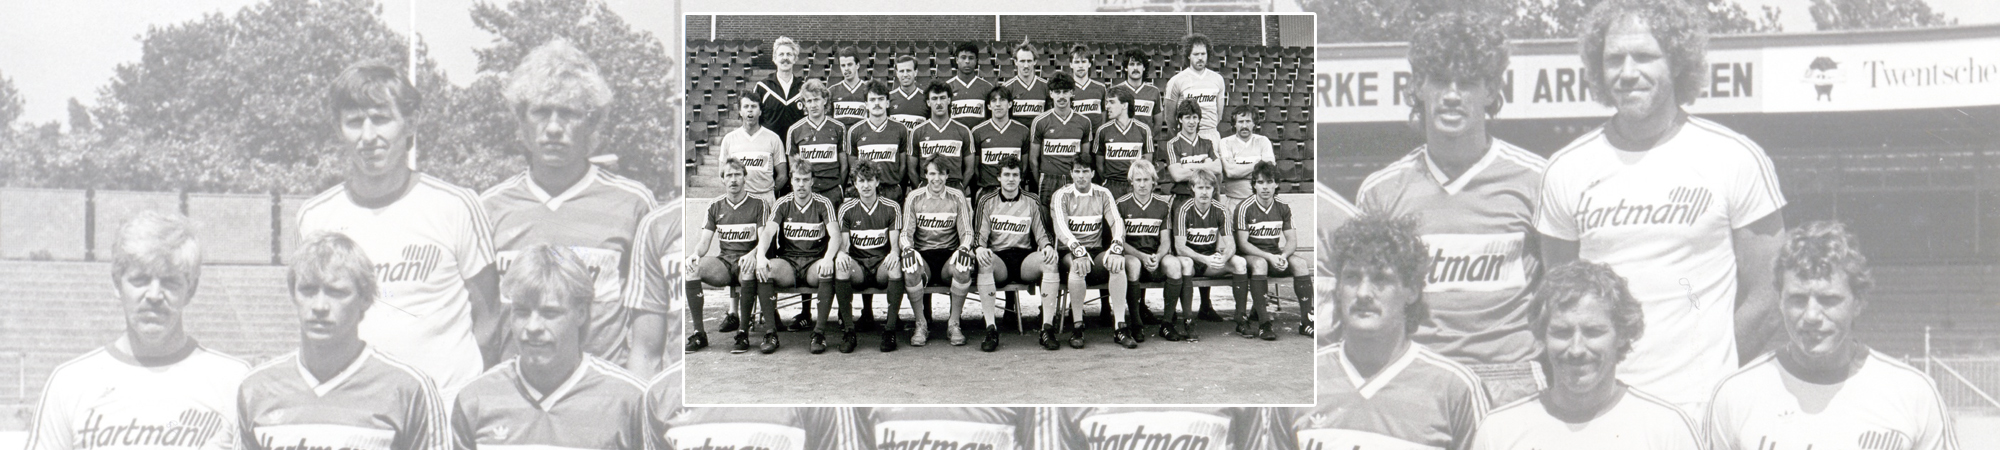 FC Twente seizoen 1985/1986